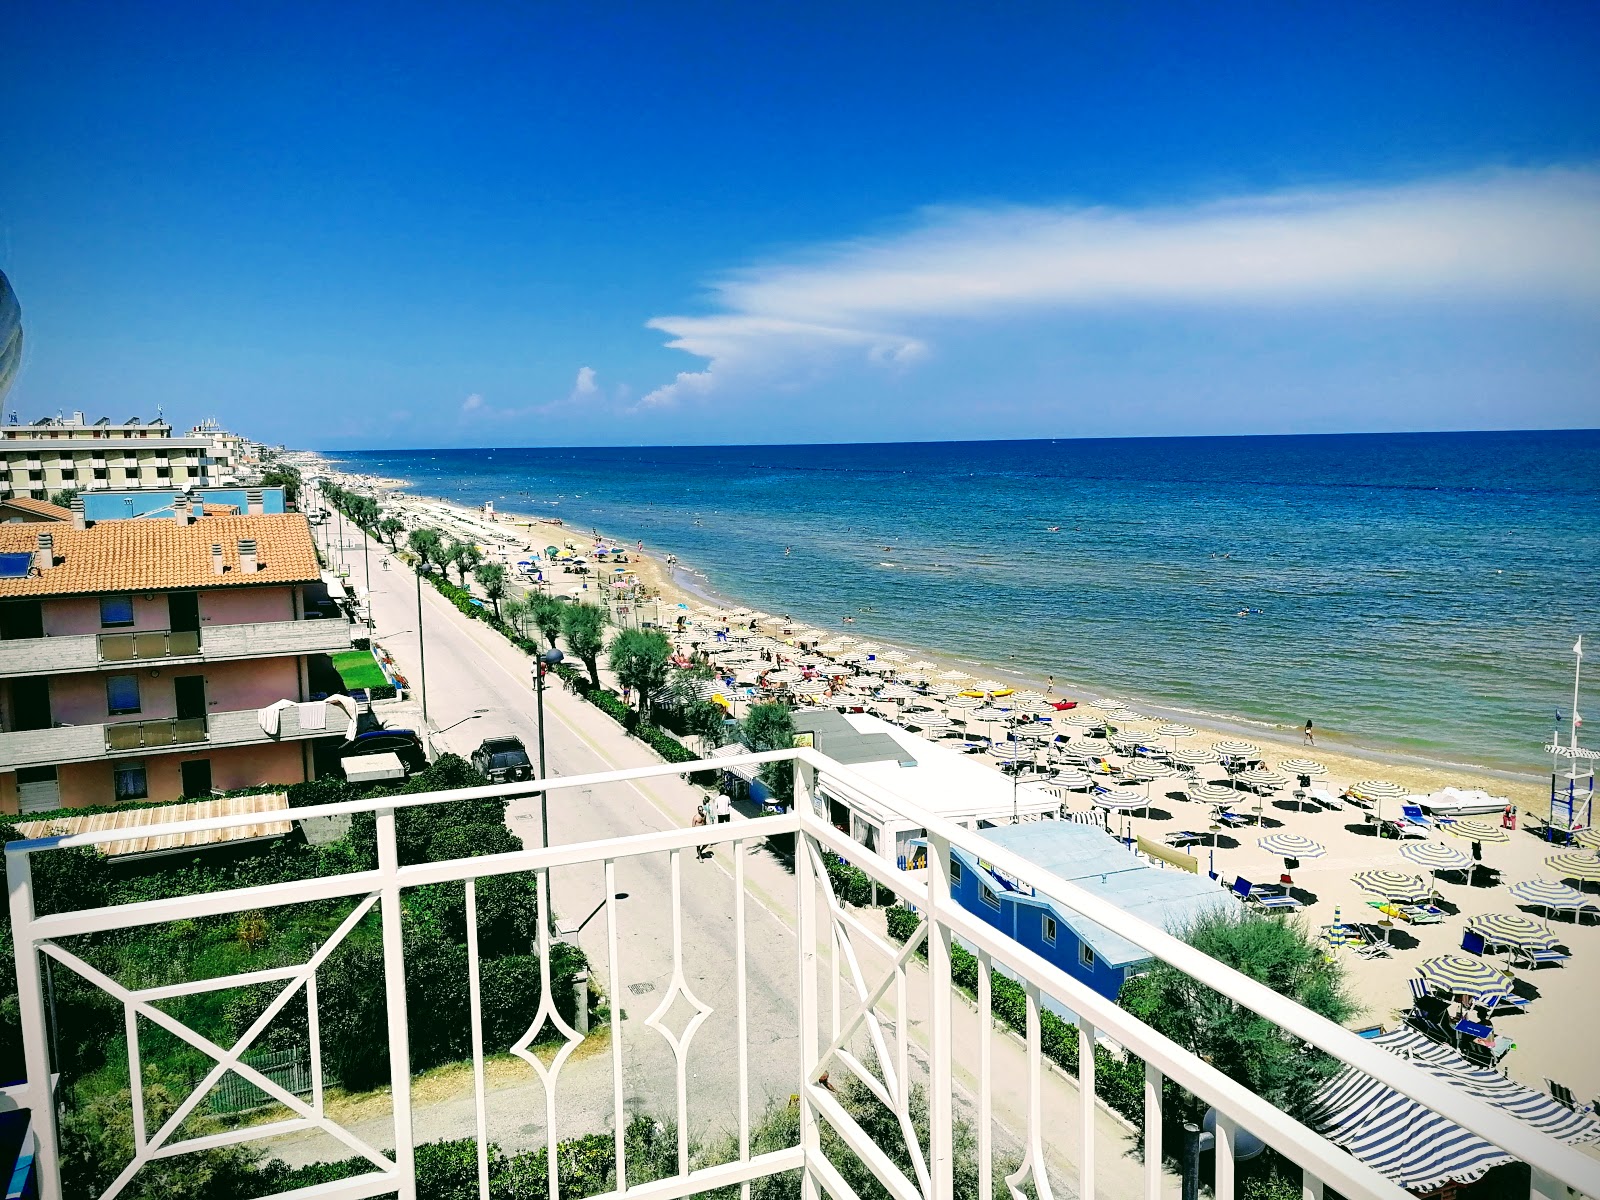 Foto di Marotta beach - luogo popolare tra gli intenditori del relax